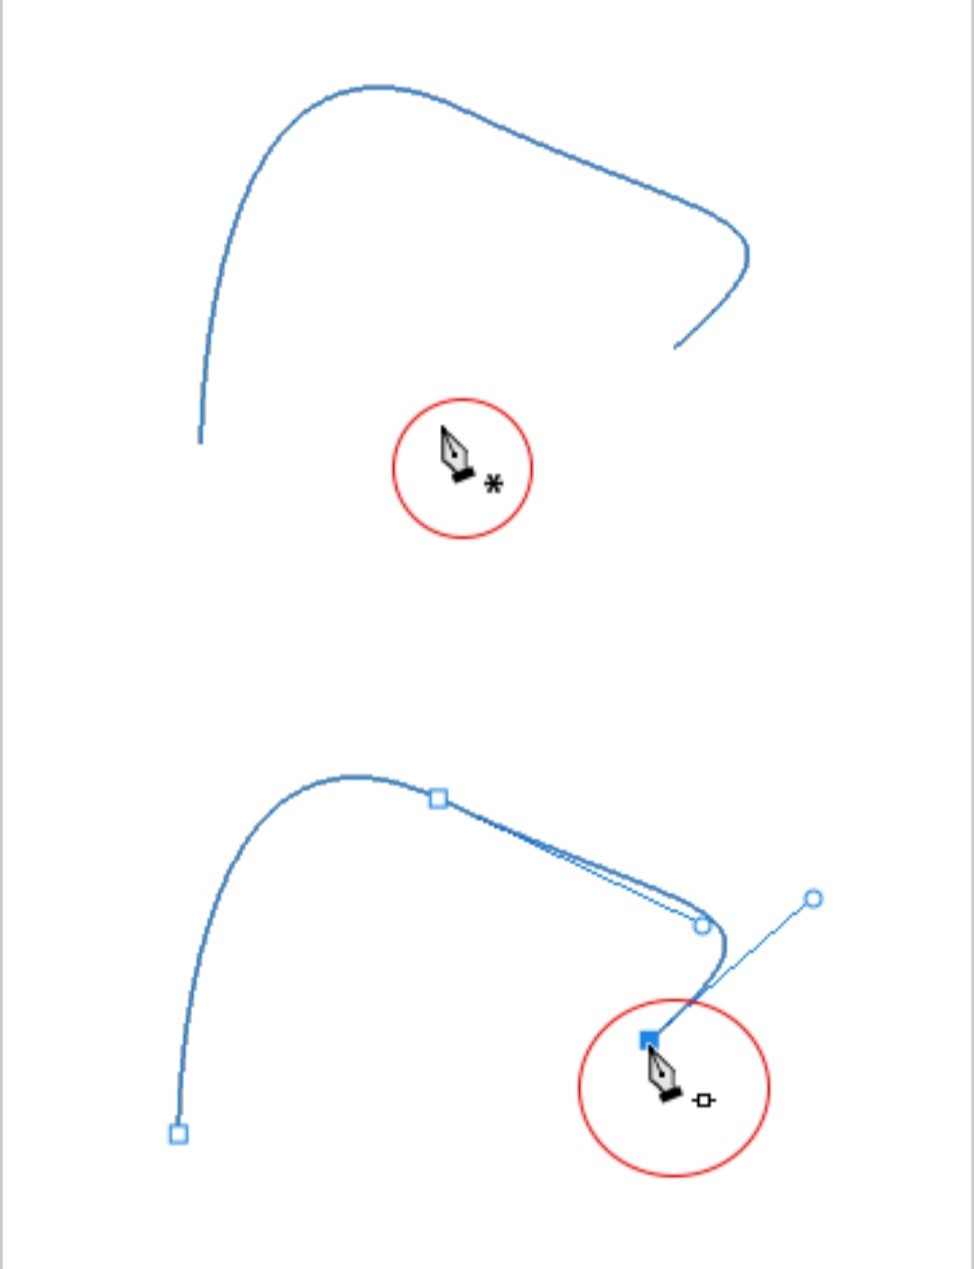 خطوط منحنی با ابزار pen در فتوشاپ